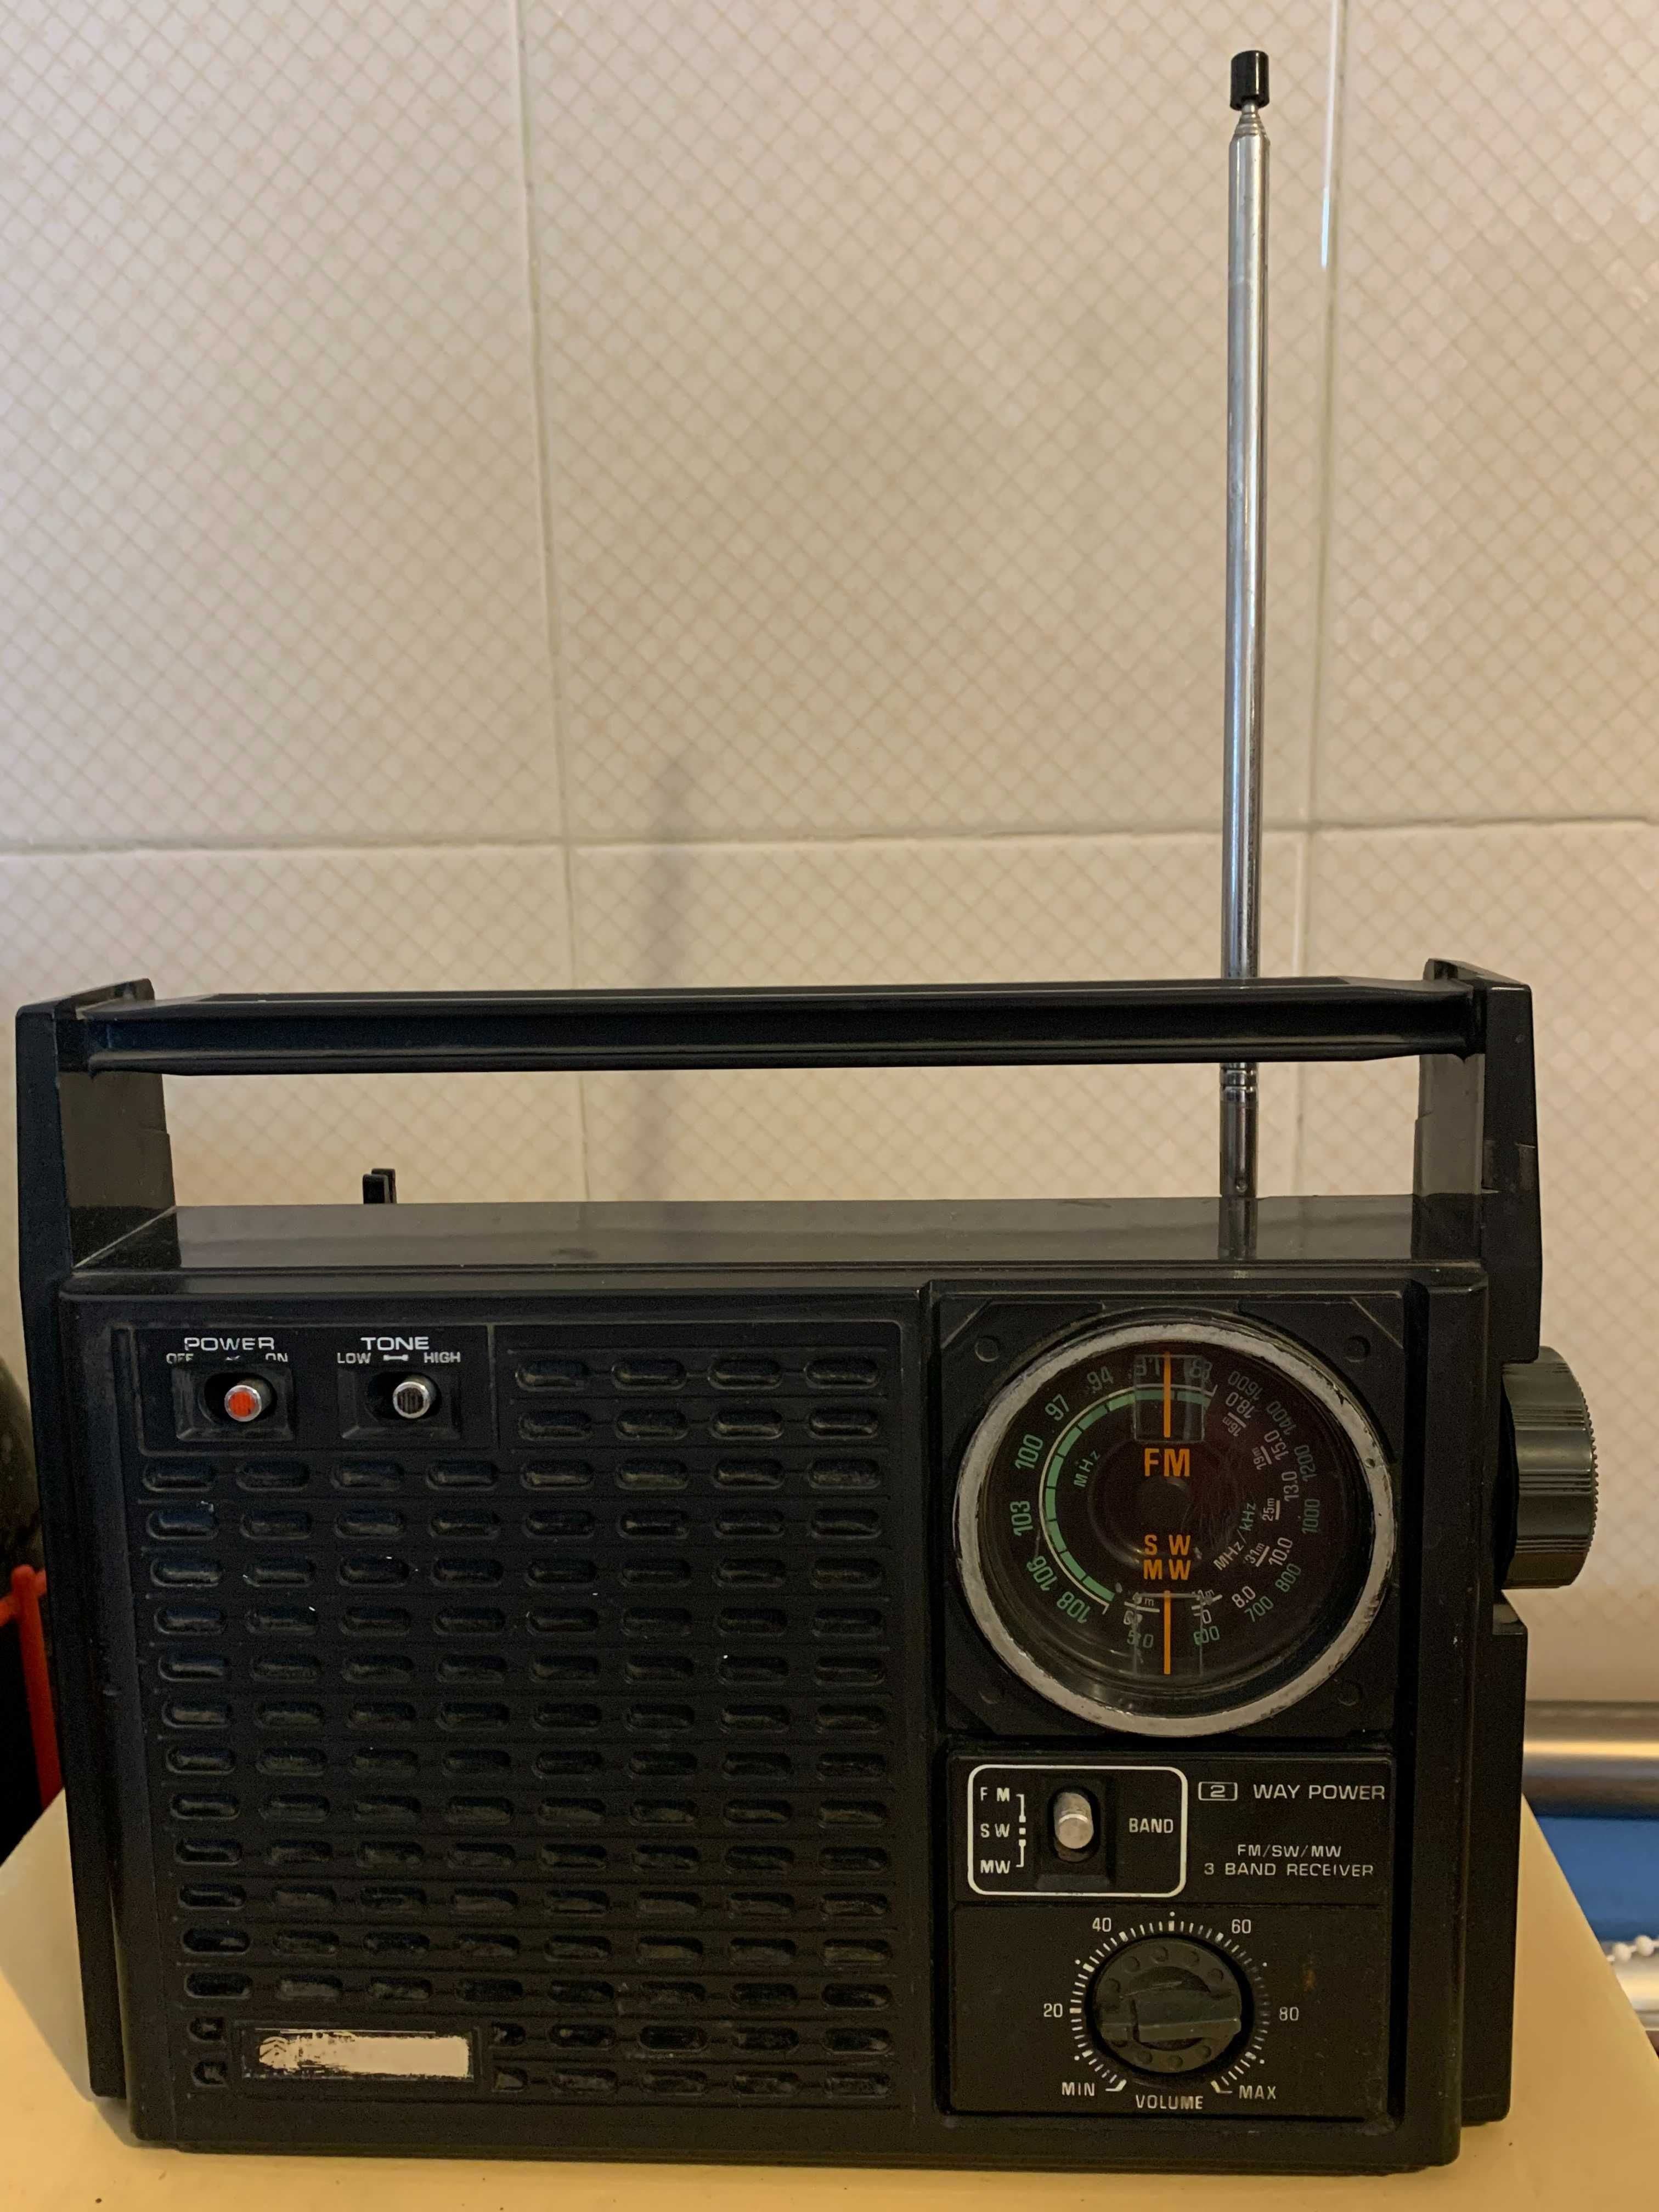 30€ - Radio de 1976 - SANYO RP 7331 fabricado no Japão